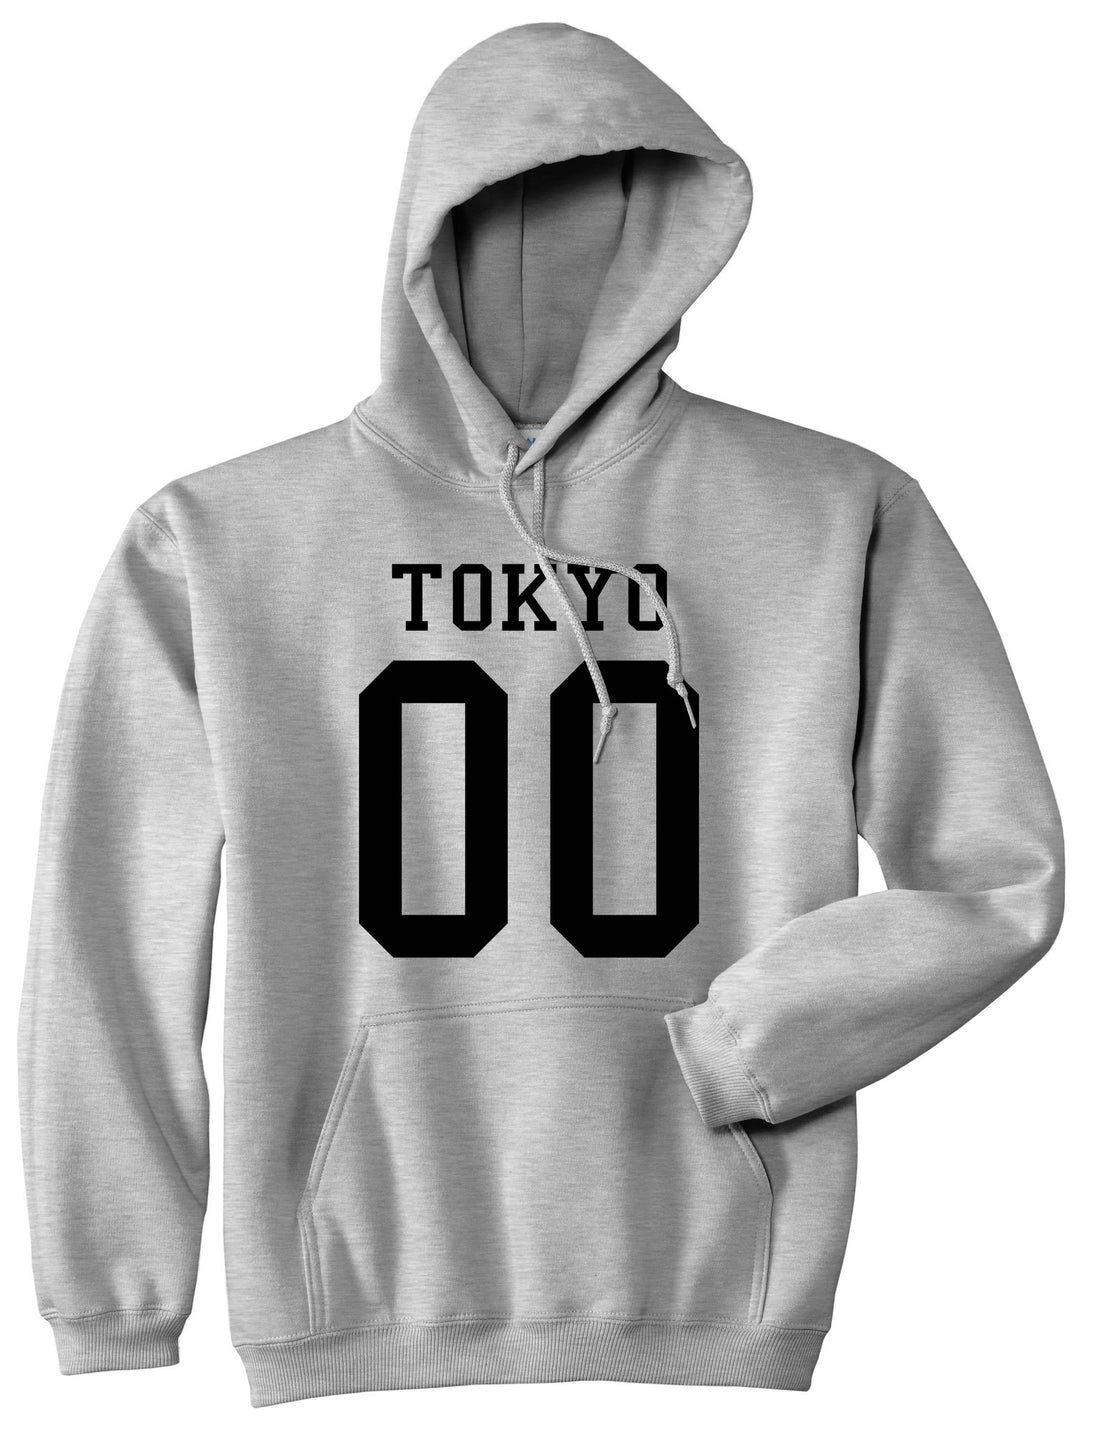 Tokyo Team 00 Jersey Japan Boys Kids Pullover Hoodie Hoody in Grey By Kings Of NY